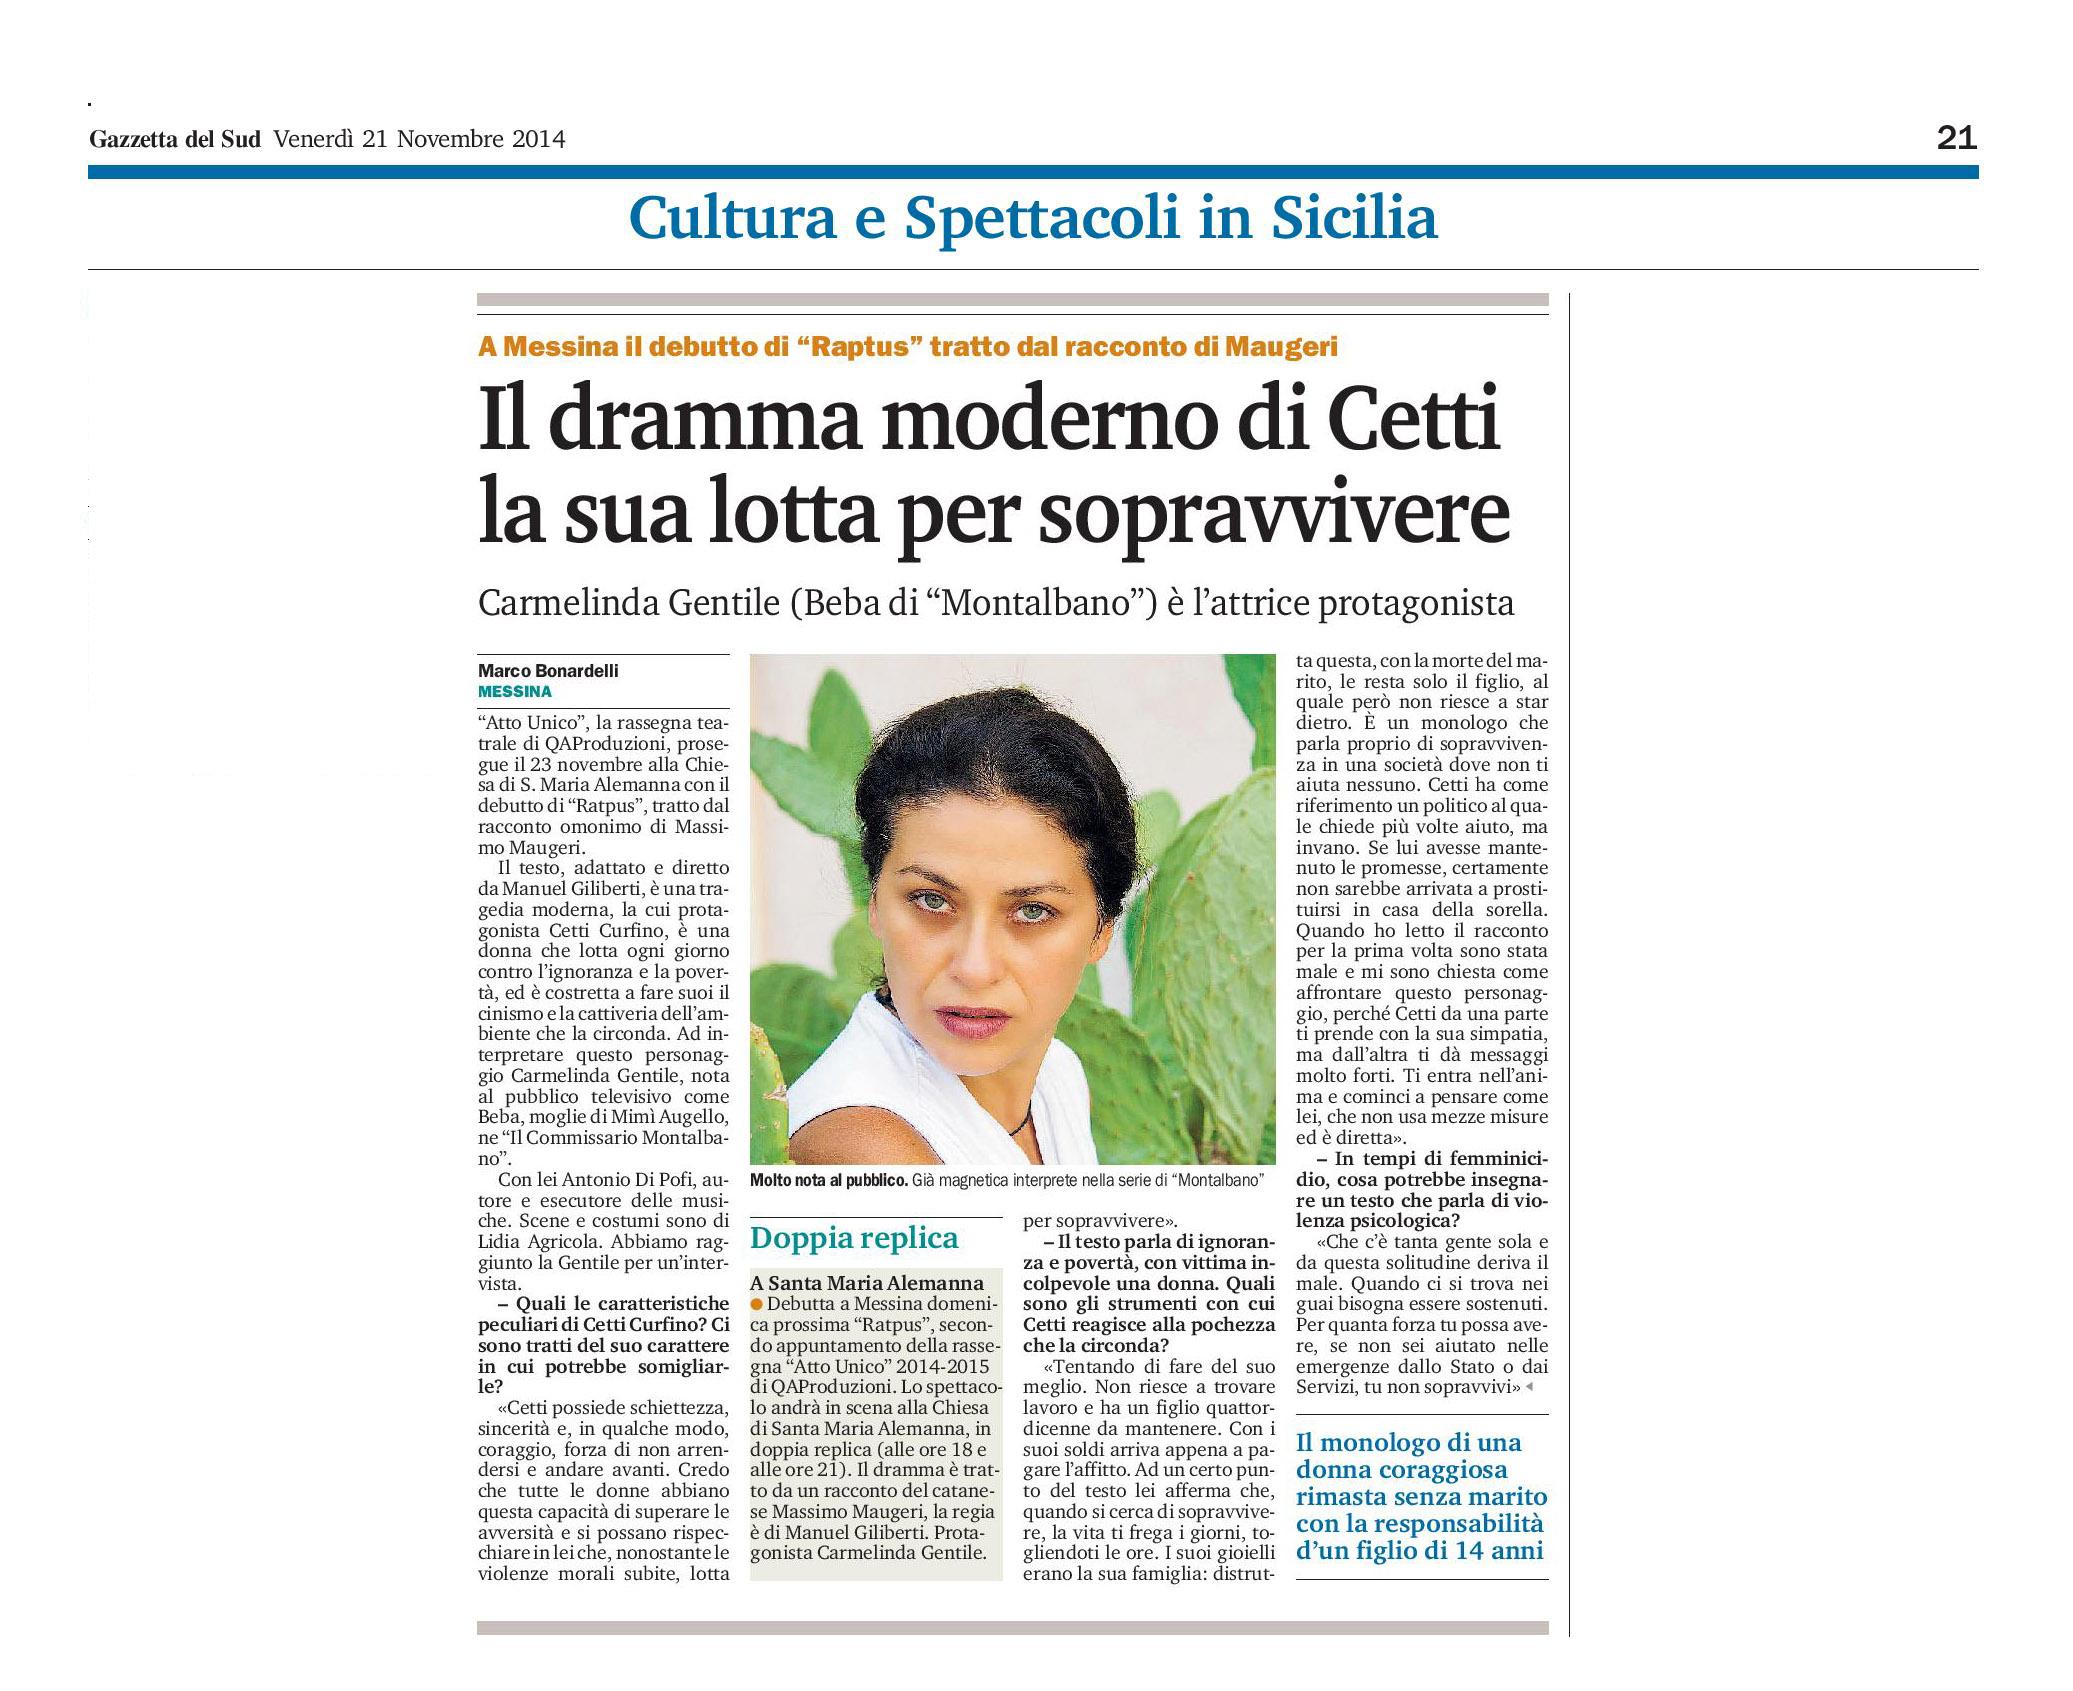 104 - Carmelinda Gentile - Il dramma moderno di Cetti - 21 novembre 2014.jpg